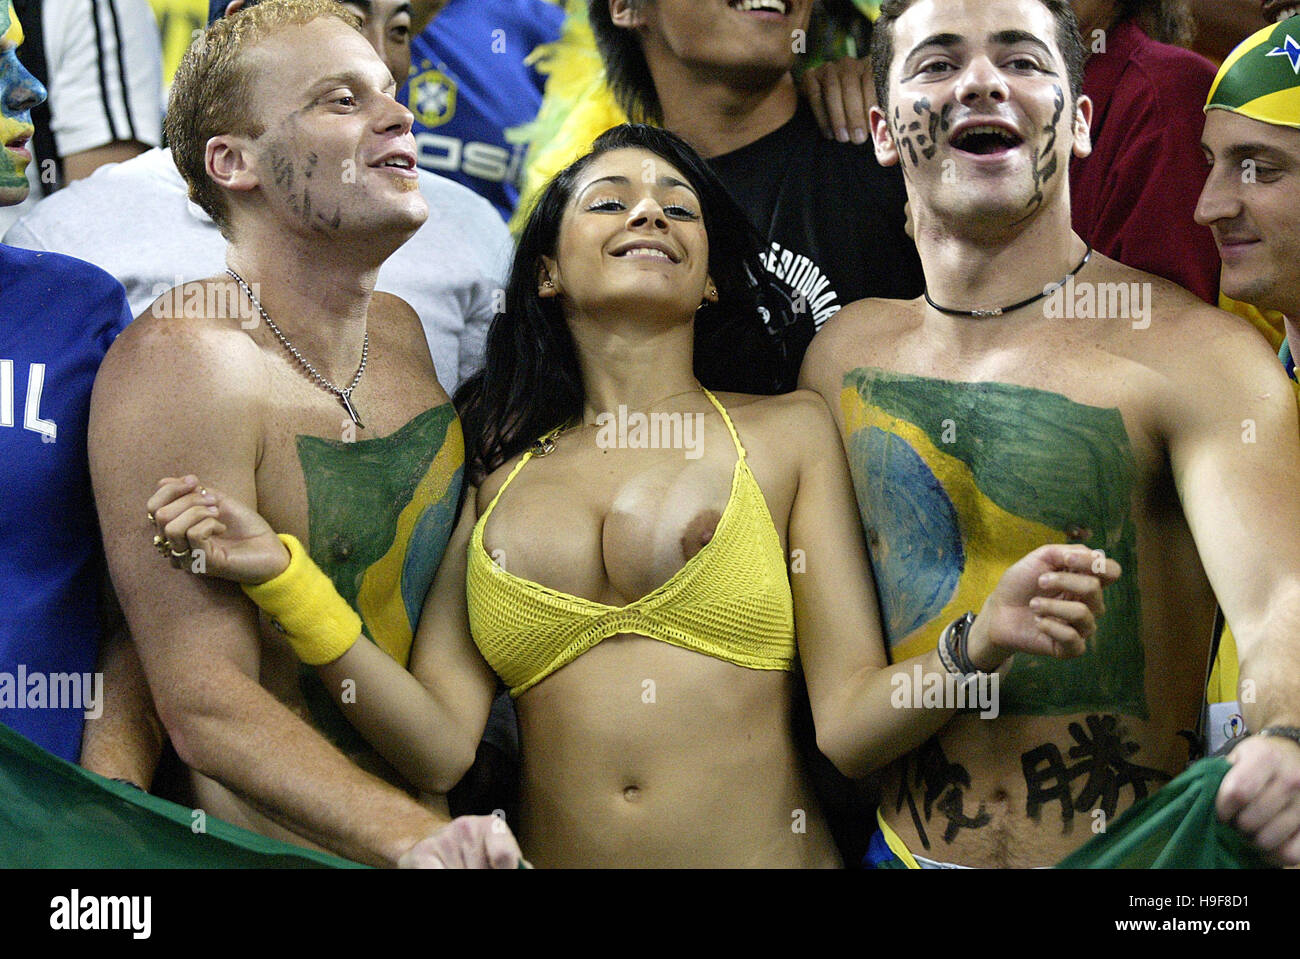 Brazilian only fans